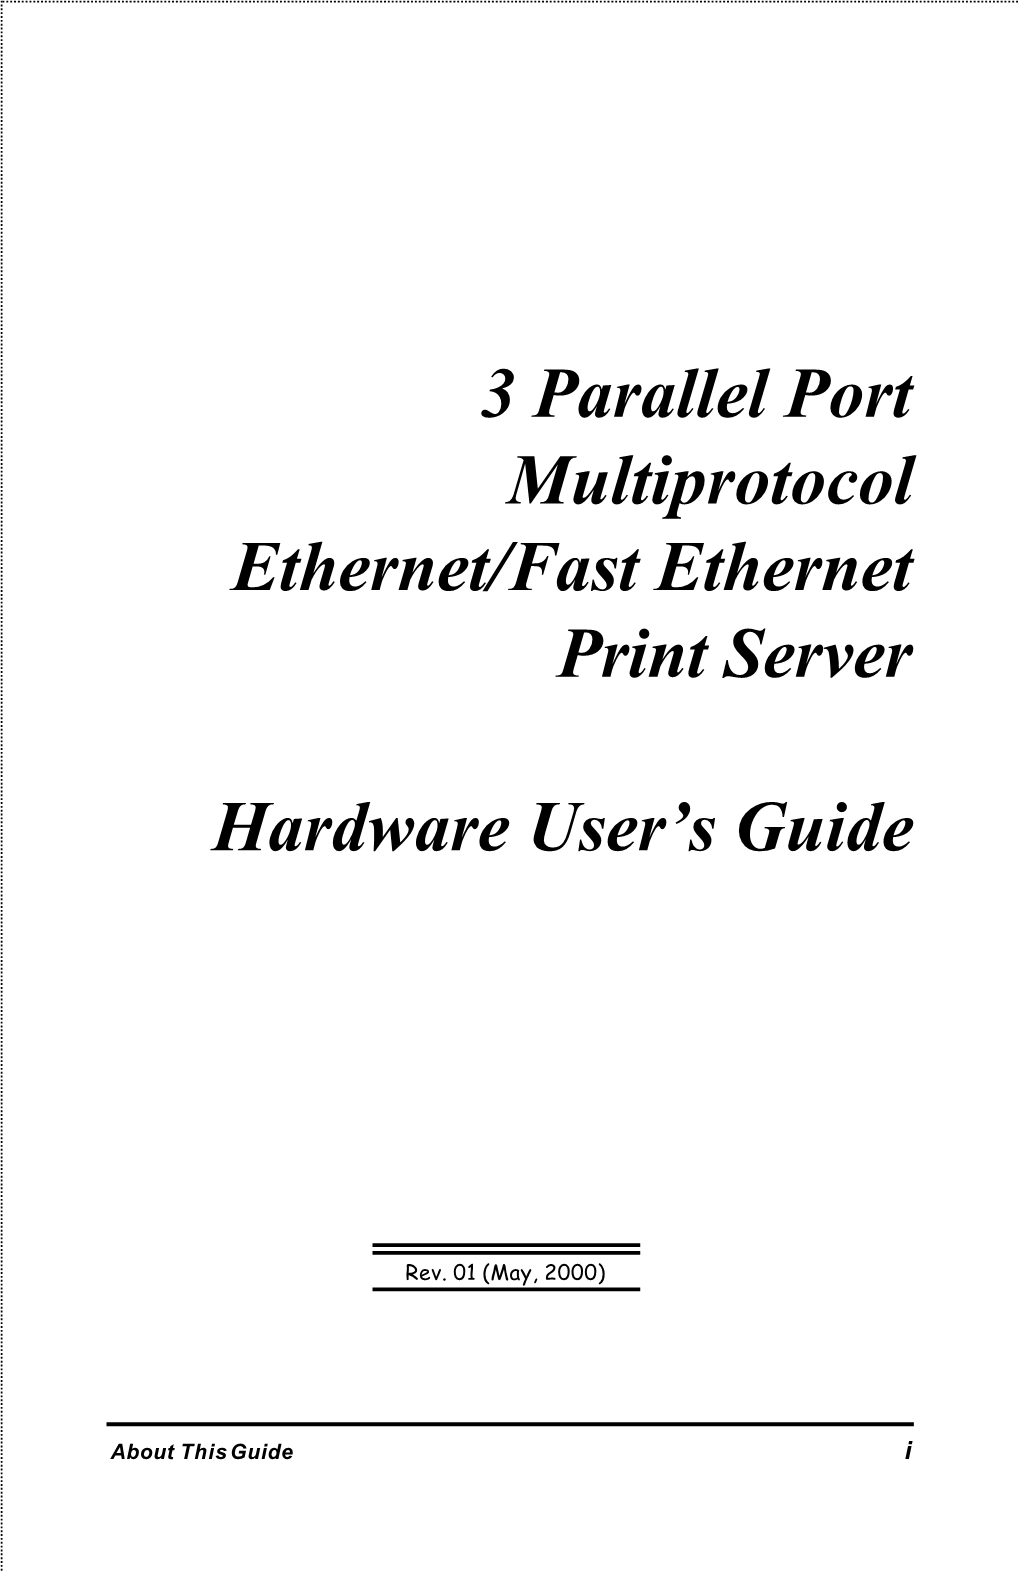 3 Parallel Port Multiprotocol Ethernet/Fast Ethernet Print Server